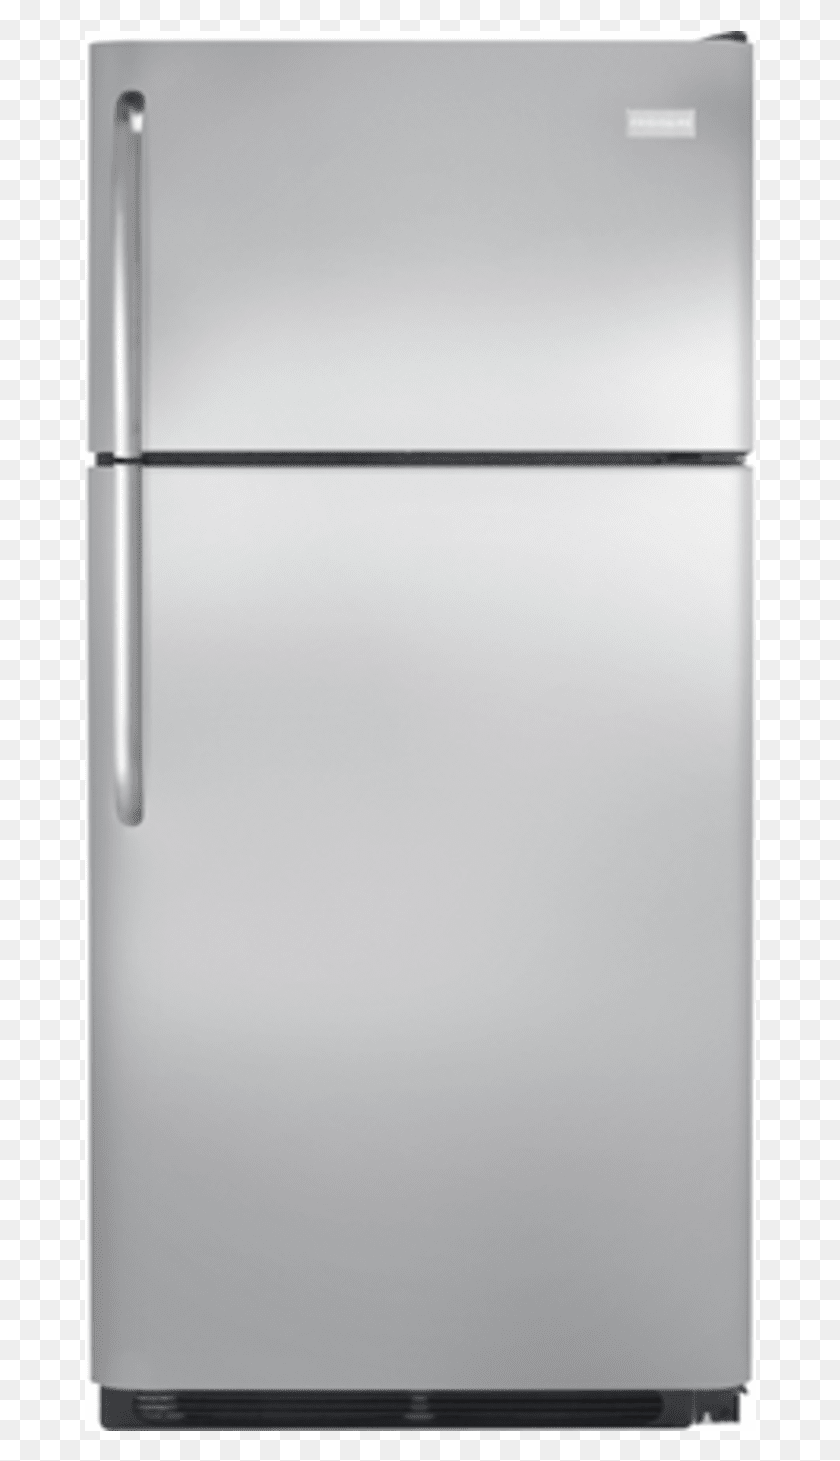 672x1401 Descargar Png Refrigerador Congelador Superior De Acero Inoxidable Refrigeradores Frigidaire De 18 Cu Ft, Electrodomésticos, Lavavajillas, Encendedor Hd Png